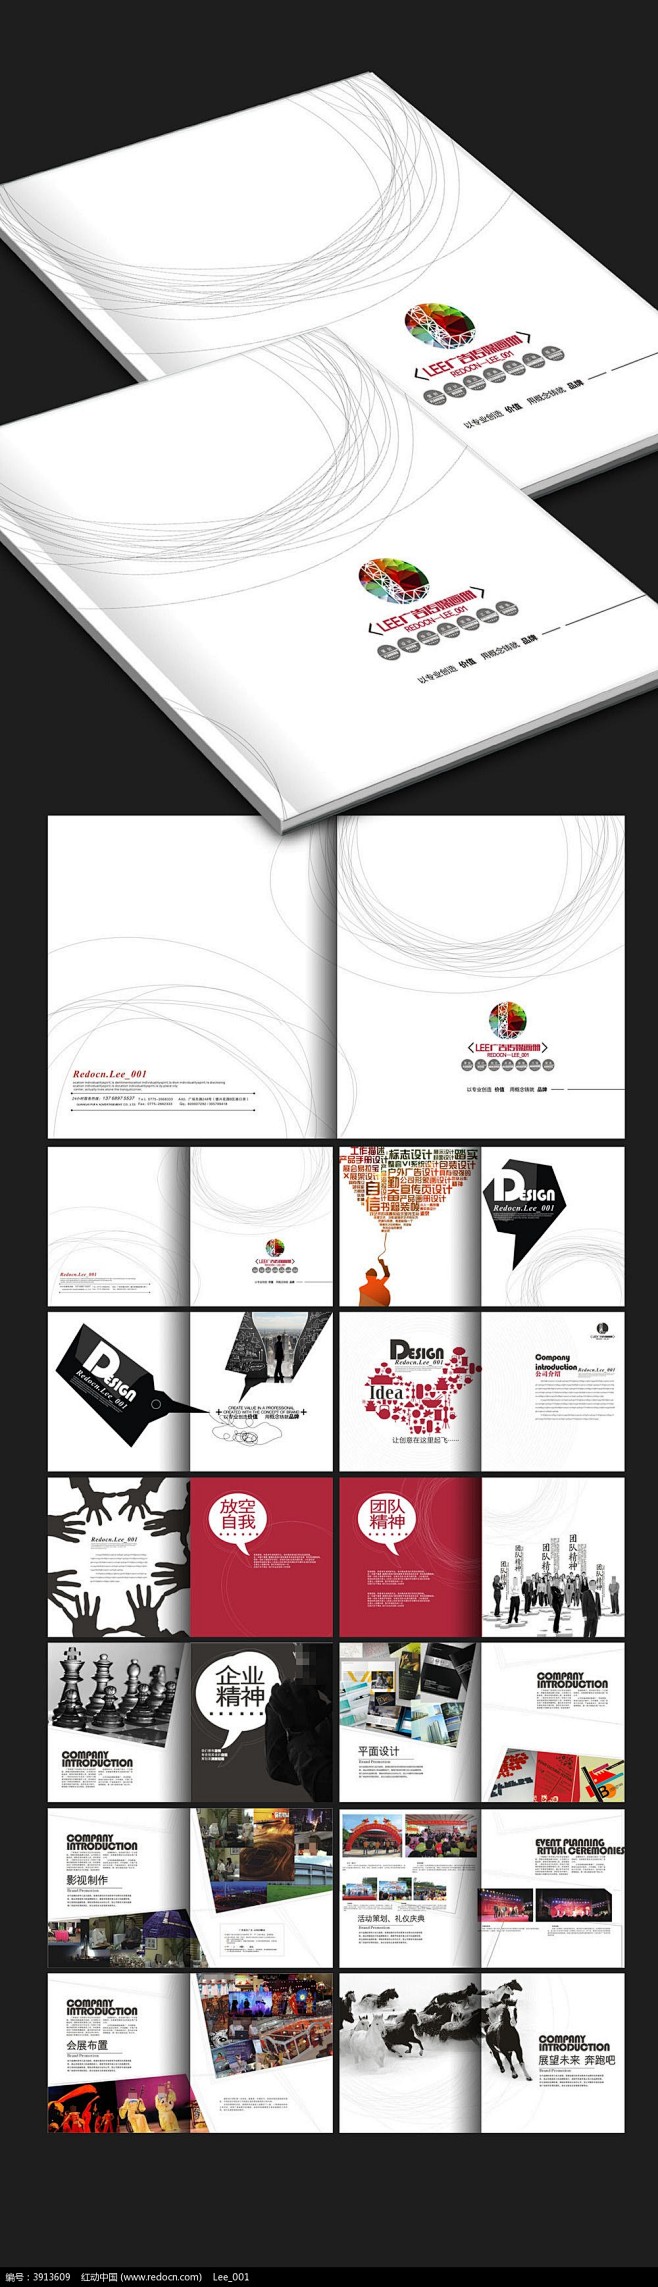 创意广告传媒公司画册设计